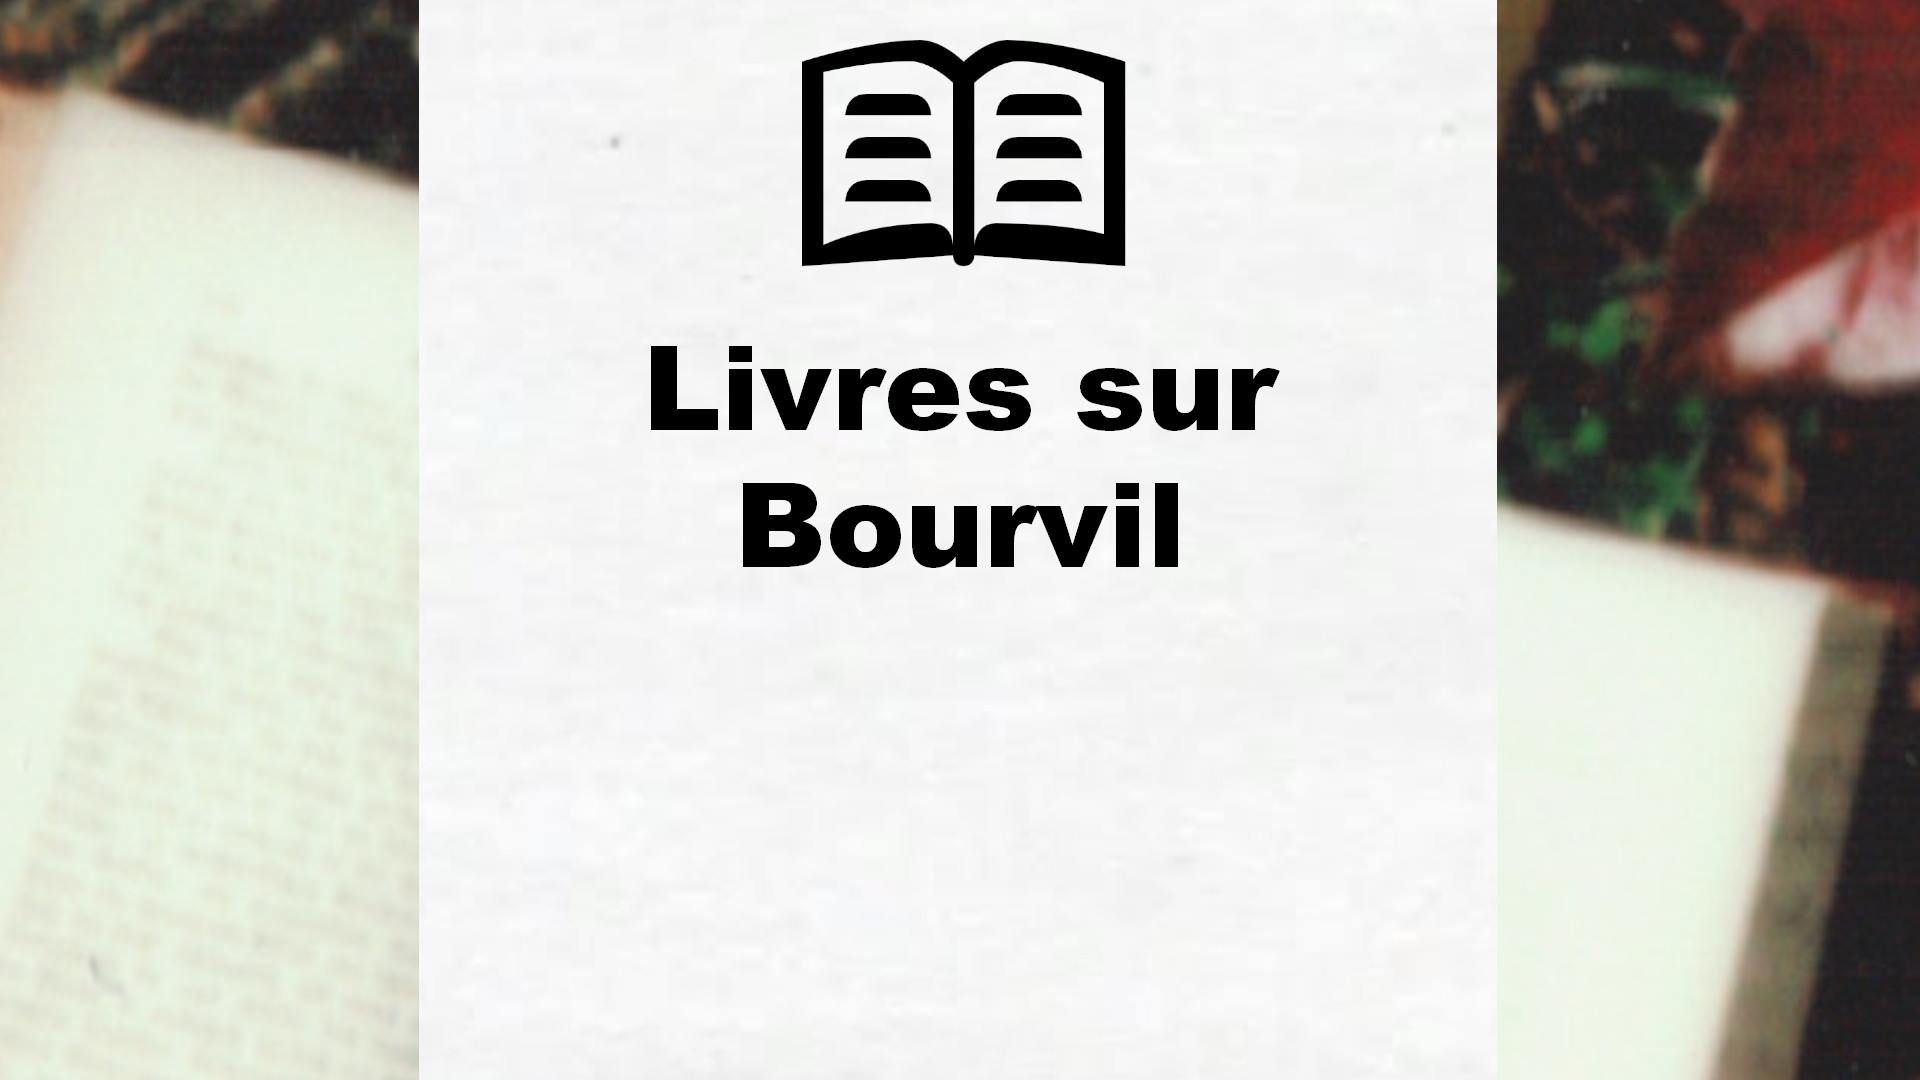 Livres sur Bourvil